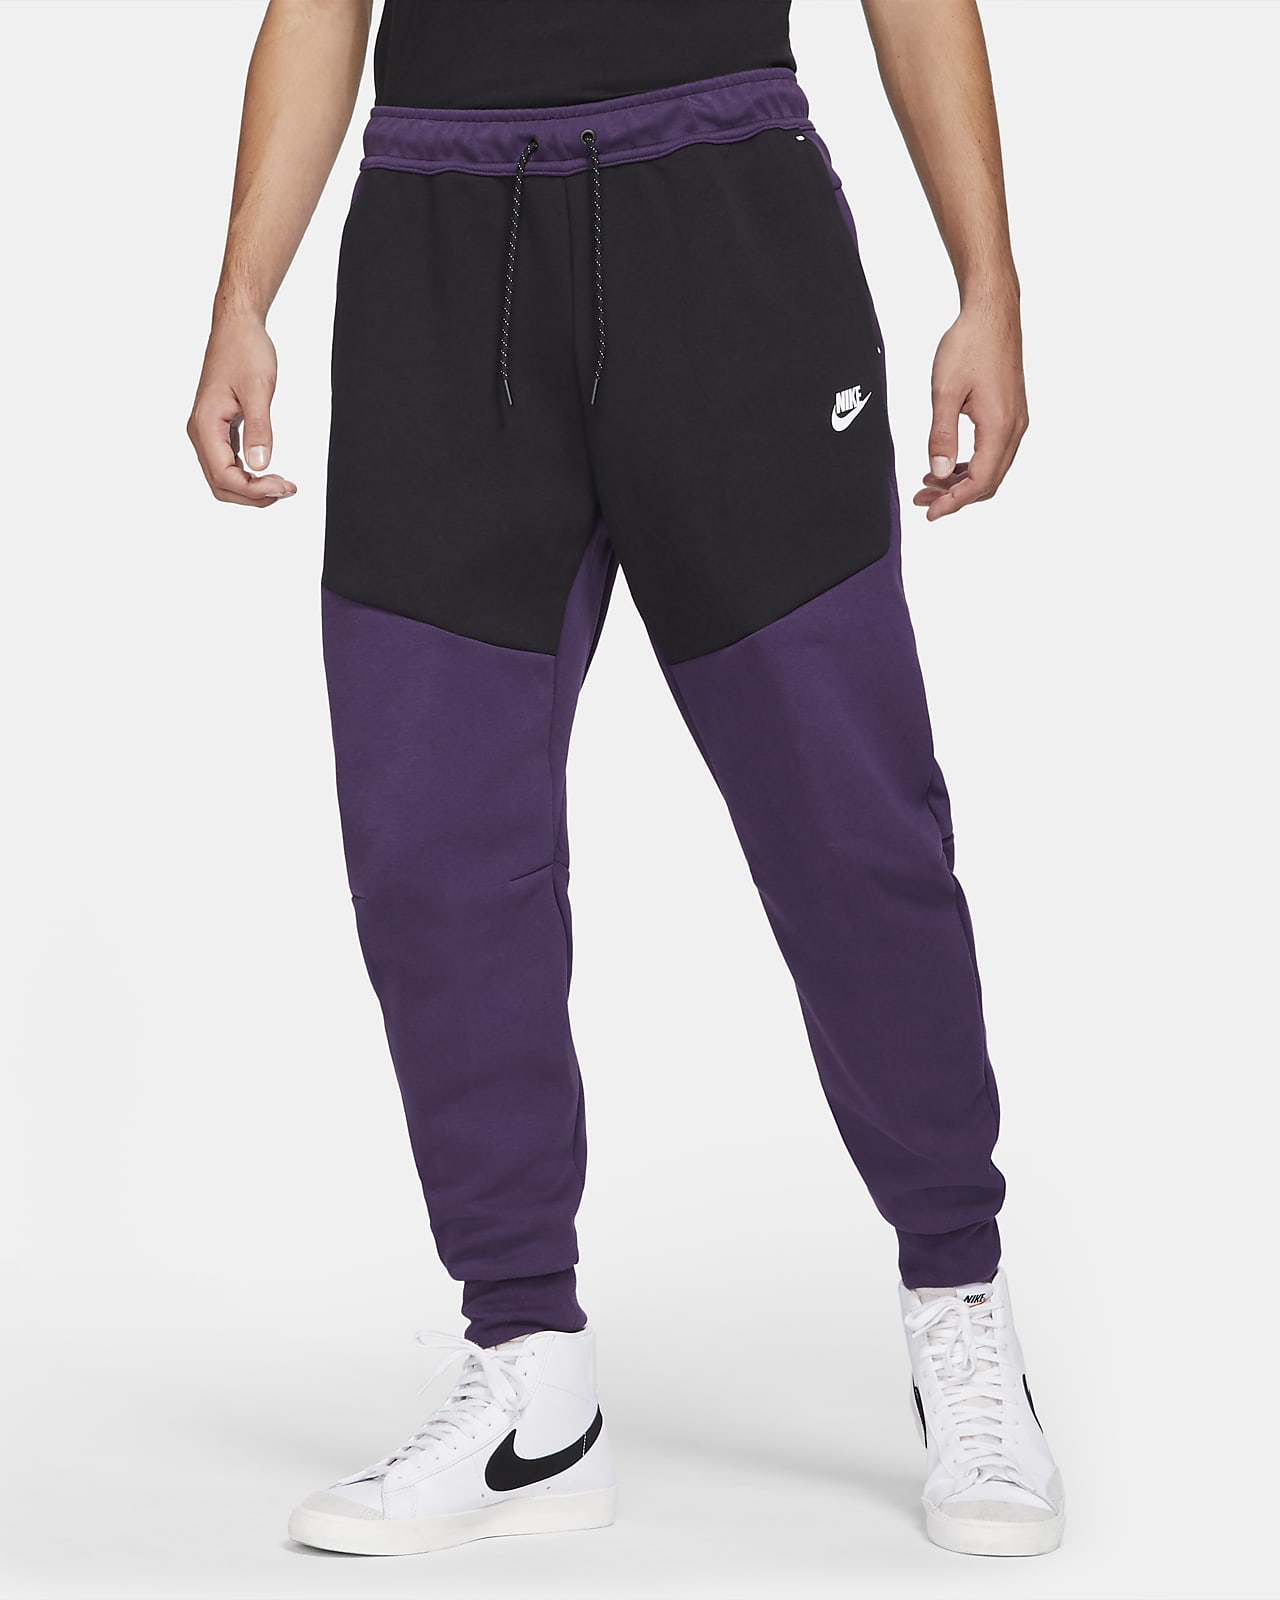 Nike Sportswear Tech Fleece ‘Grand Purple / Black’ .97 Free Shipping